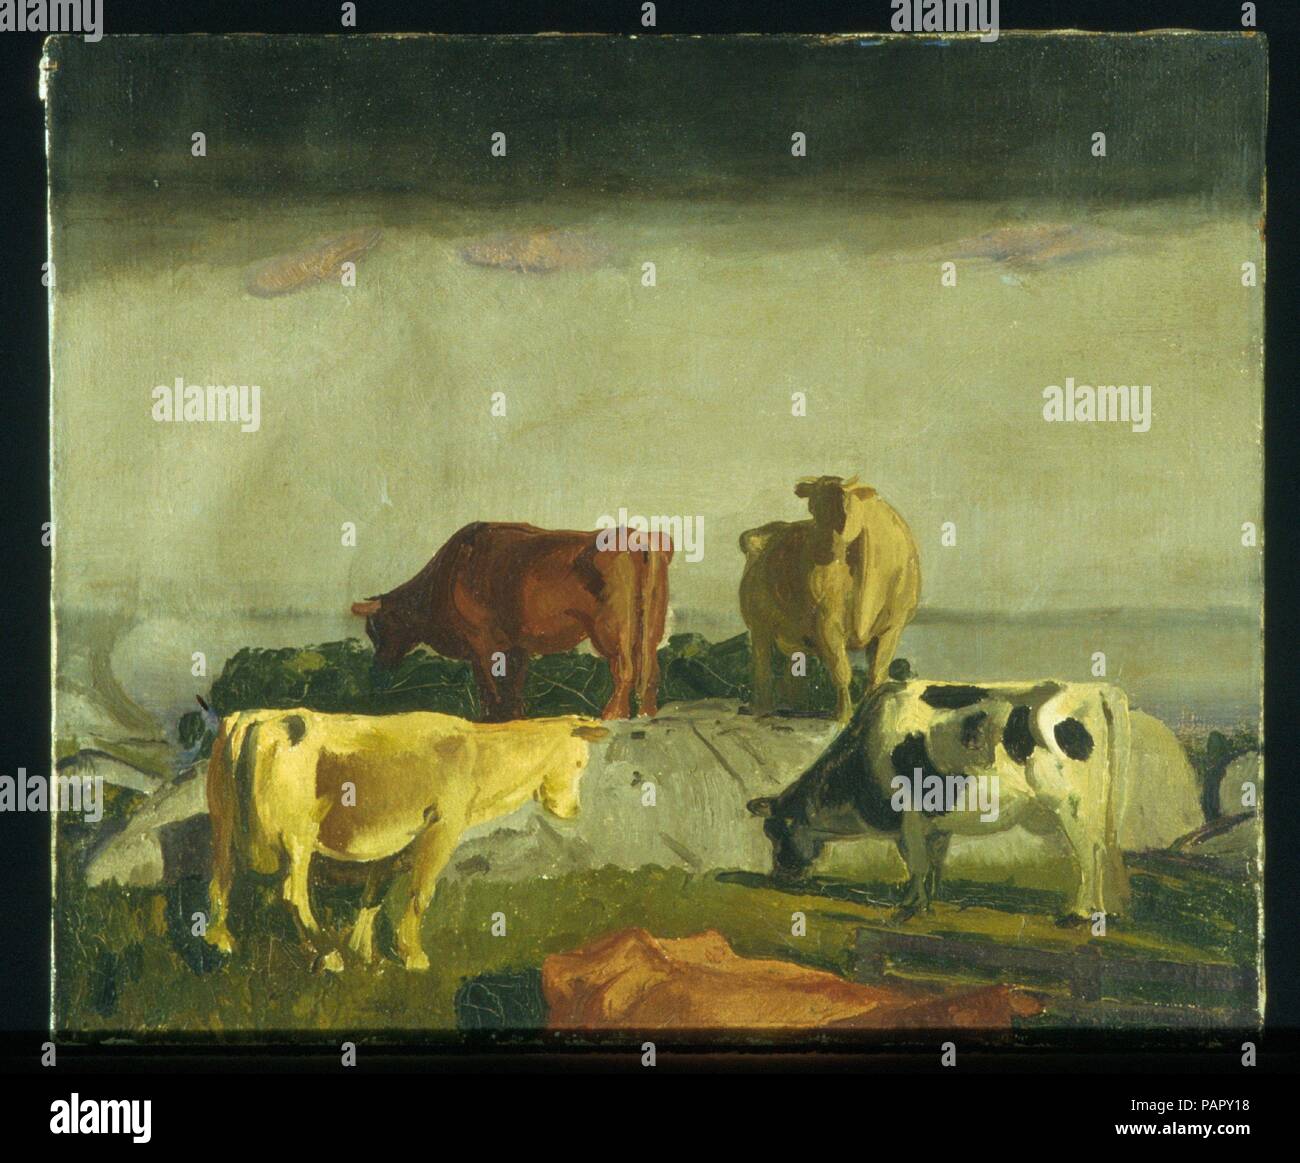 Cinco vacas. Artista: George Bellows (American, Columbus, Ohio, Nueva York, 1882-1925). Dimensiones: 20 x 24 1/8 pulg. (50,8 x 61,3 cm). Fecha: 1919. Museo: Museo Metropolitano de Arte, Nueva York, Estados Unidos. Foto de stock